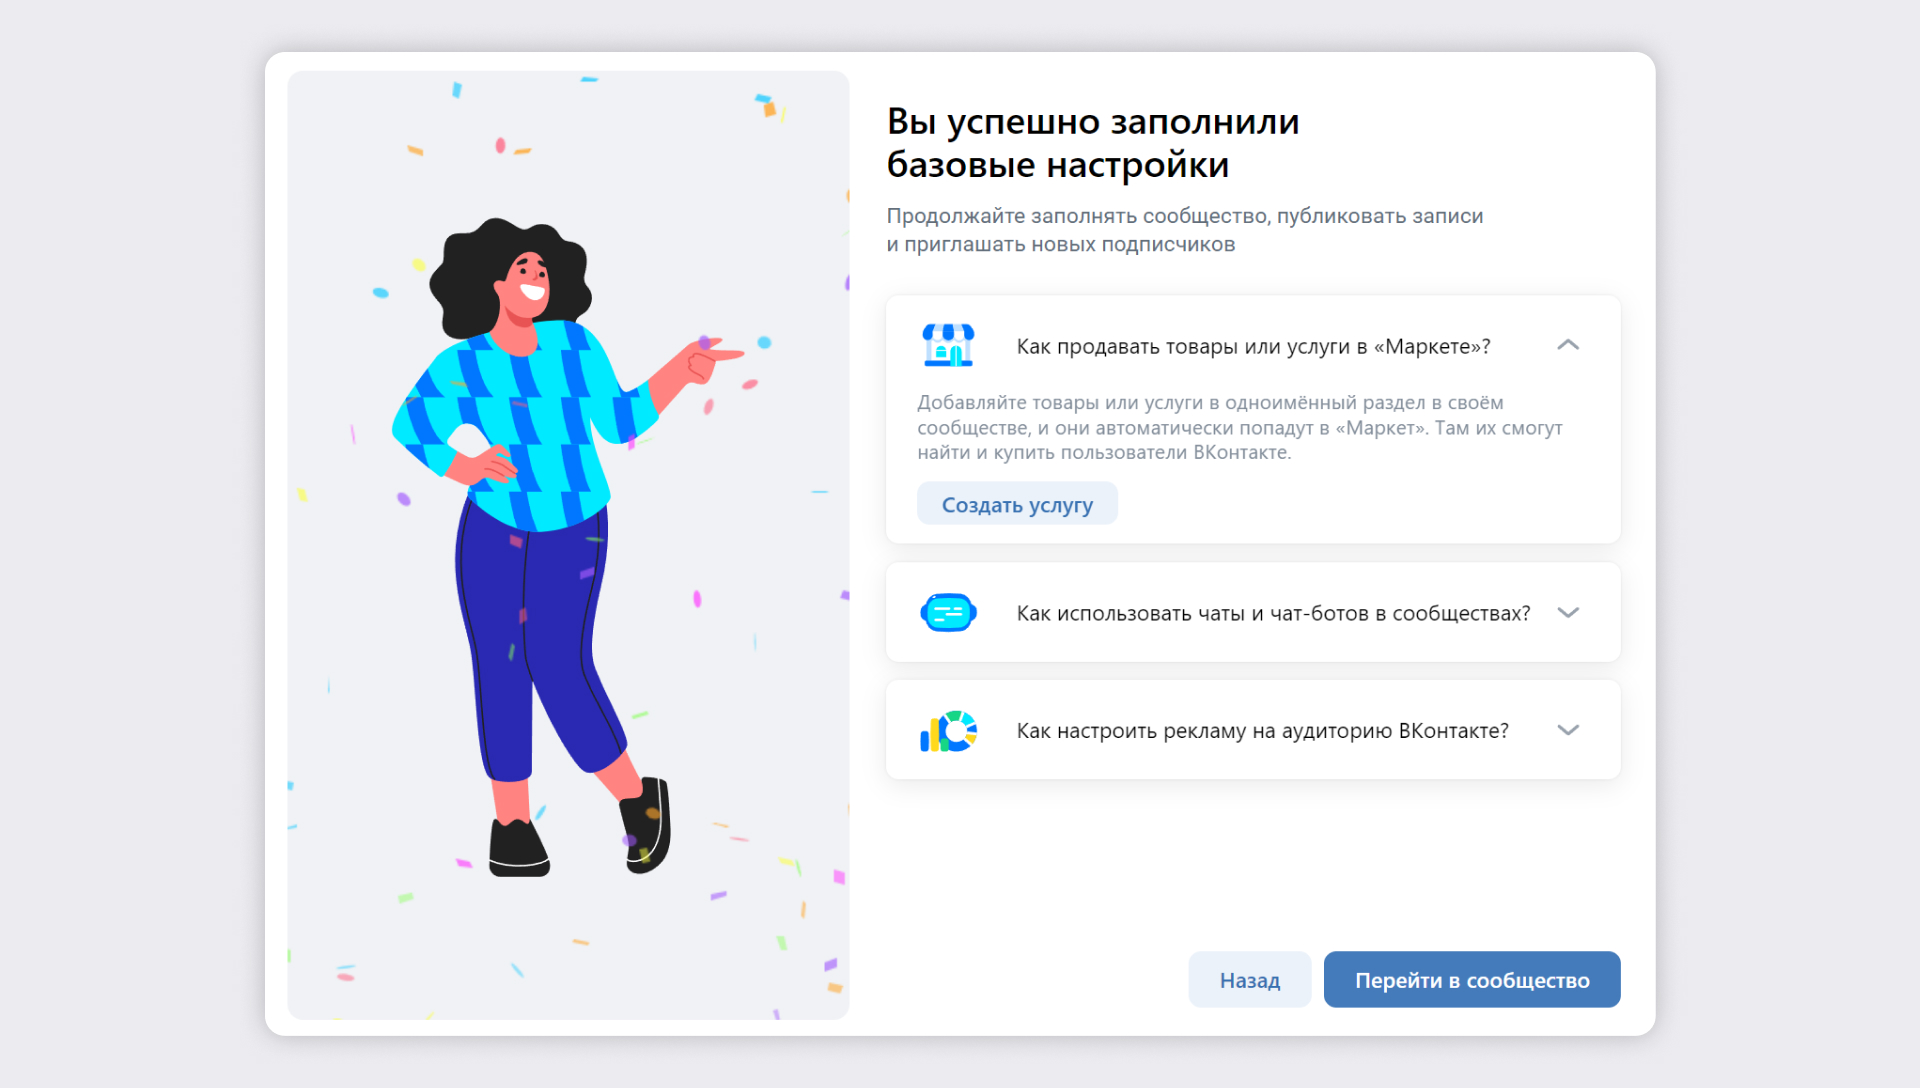 Управление Страницей бизнеса: Публикация контента | Бизнес ВКонтакте